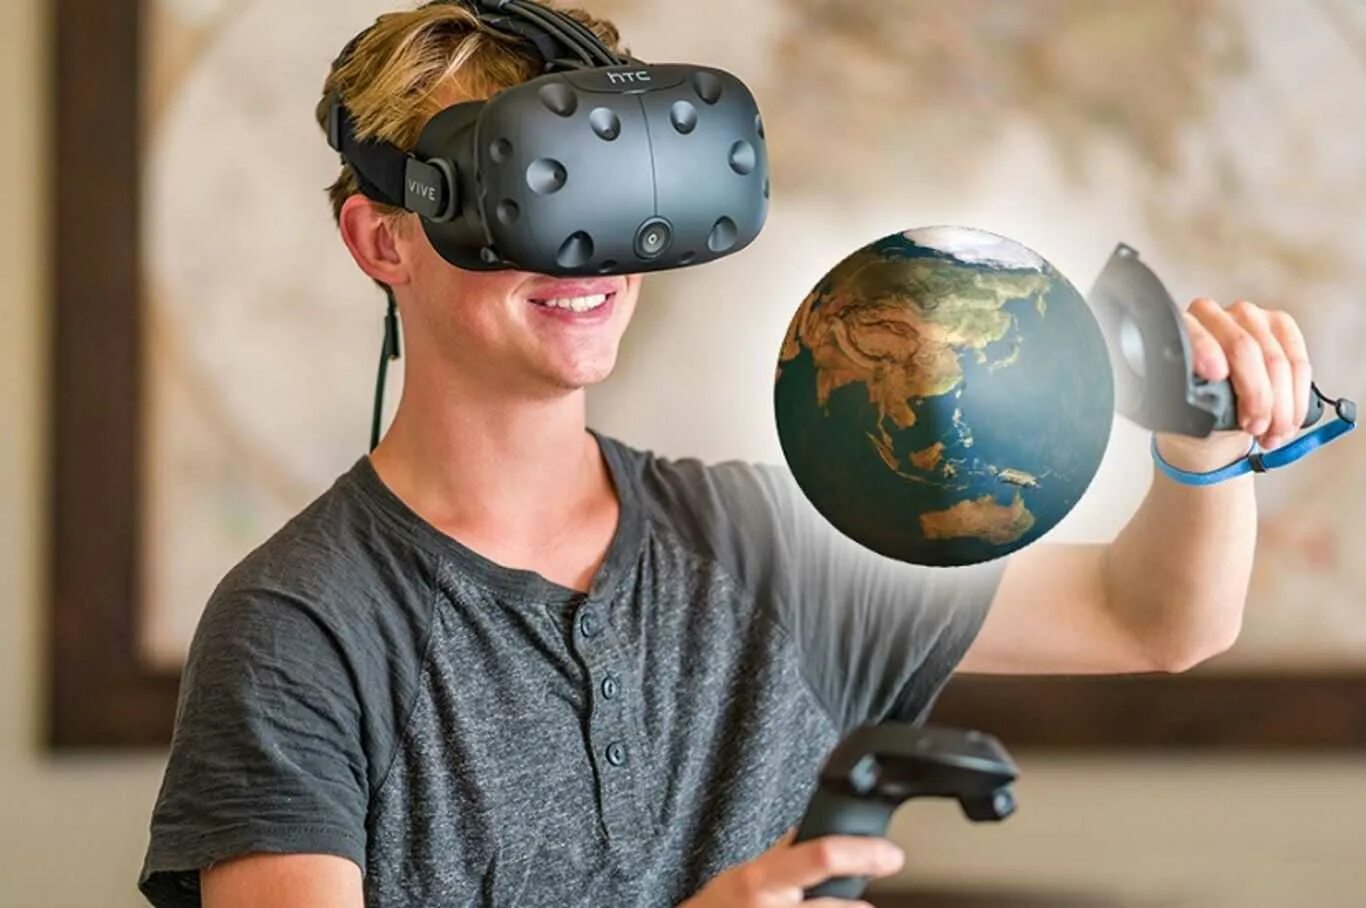 Технология виртуальной реальности vr. Иртуальная реальность. Технологии виртуальной реальности. Виртуальная реальность в образовании. Технологии виртуальной и дополненной реальности.